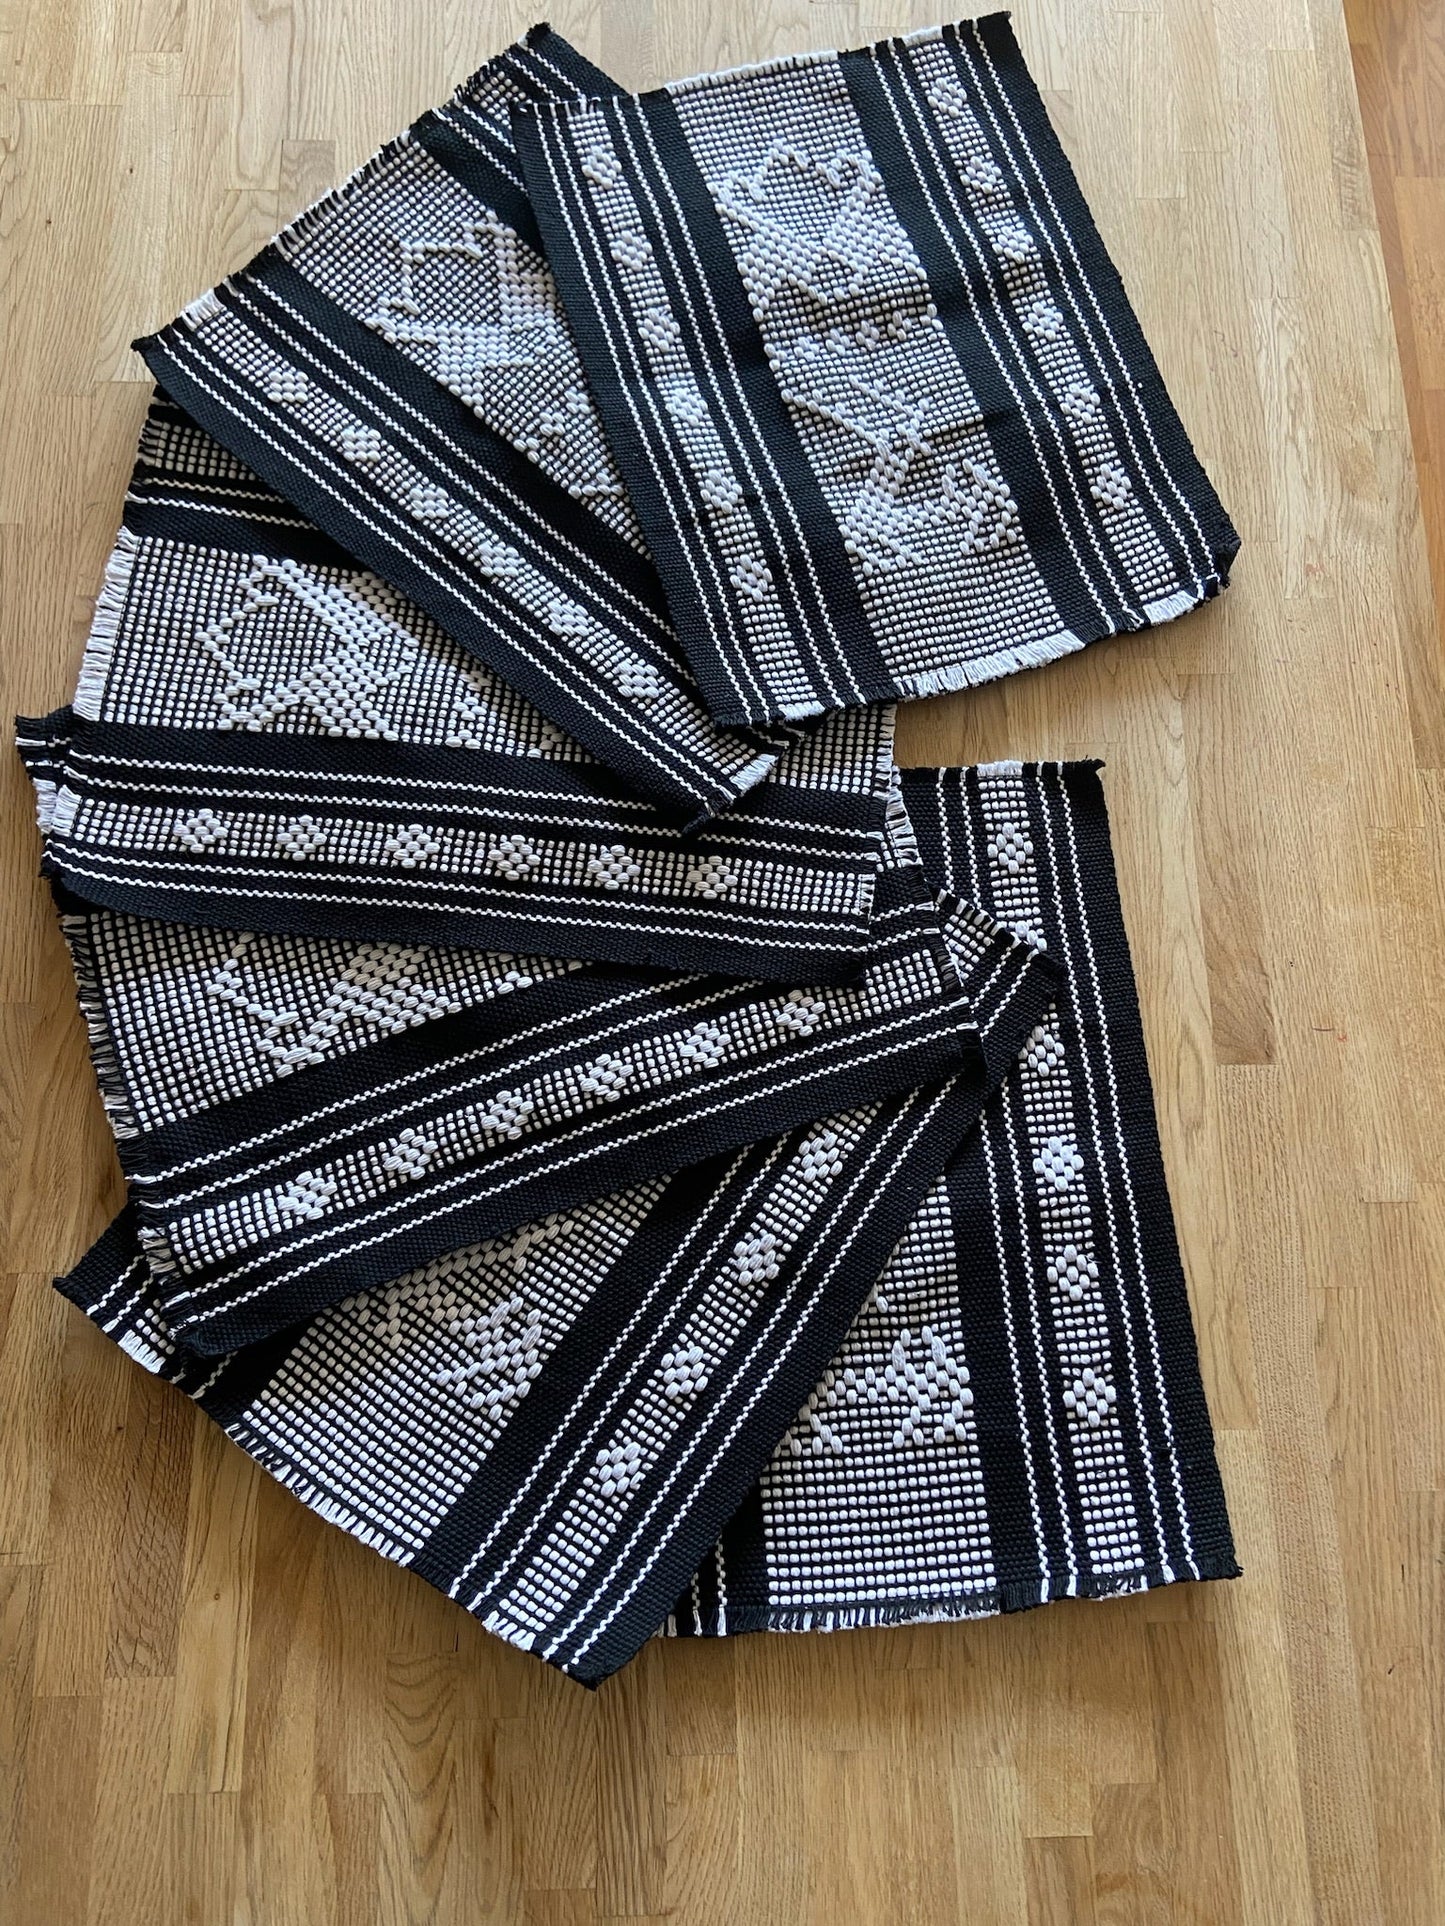 Juego de camino de mesa tejido a mano y 8 manteles individuales en negro con brocados en blanco